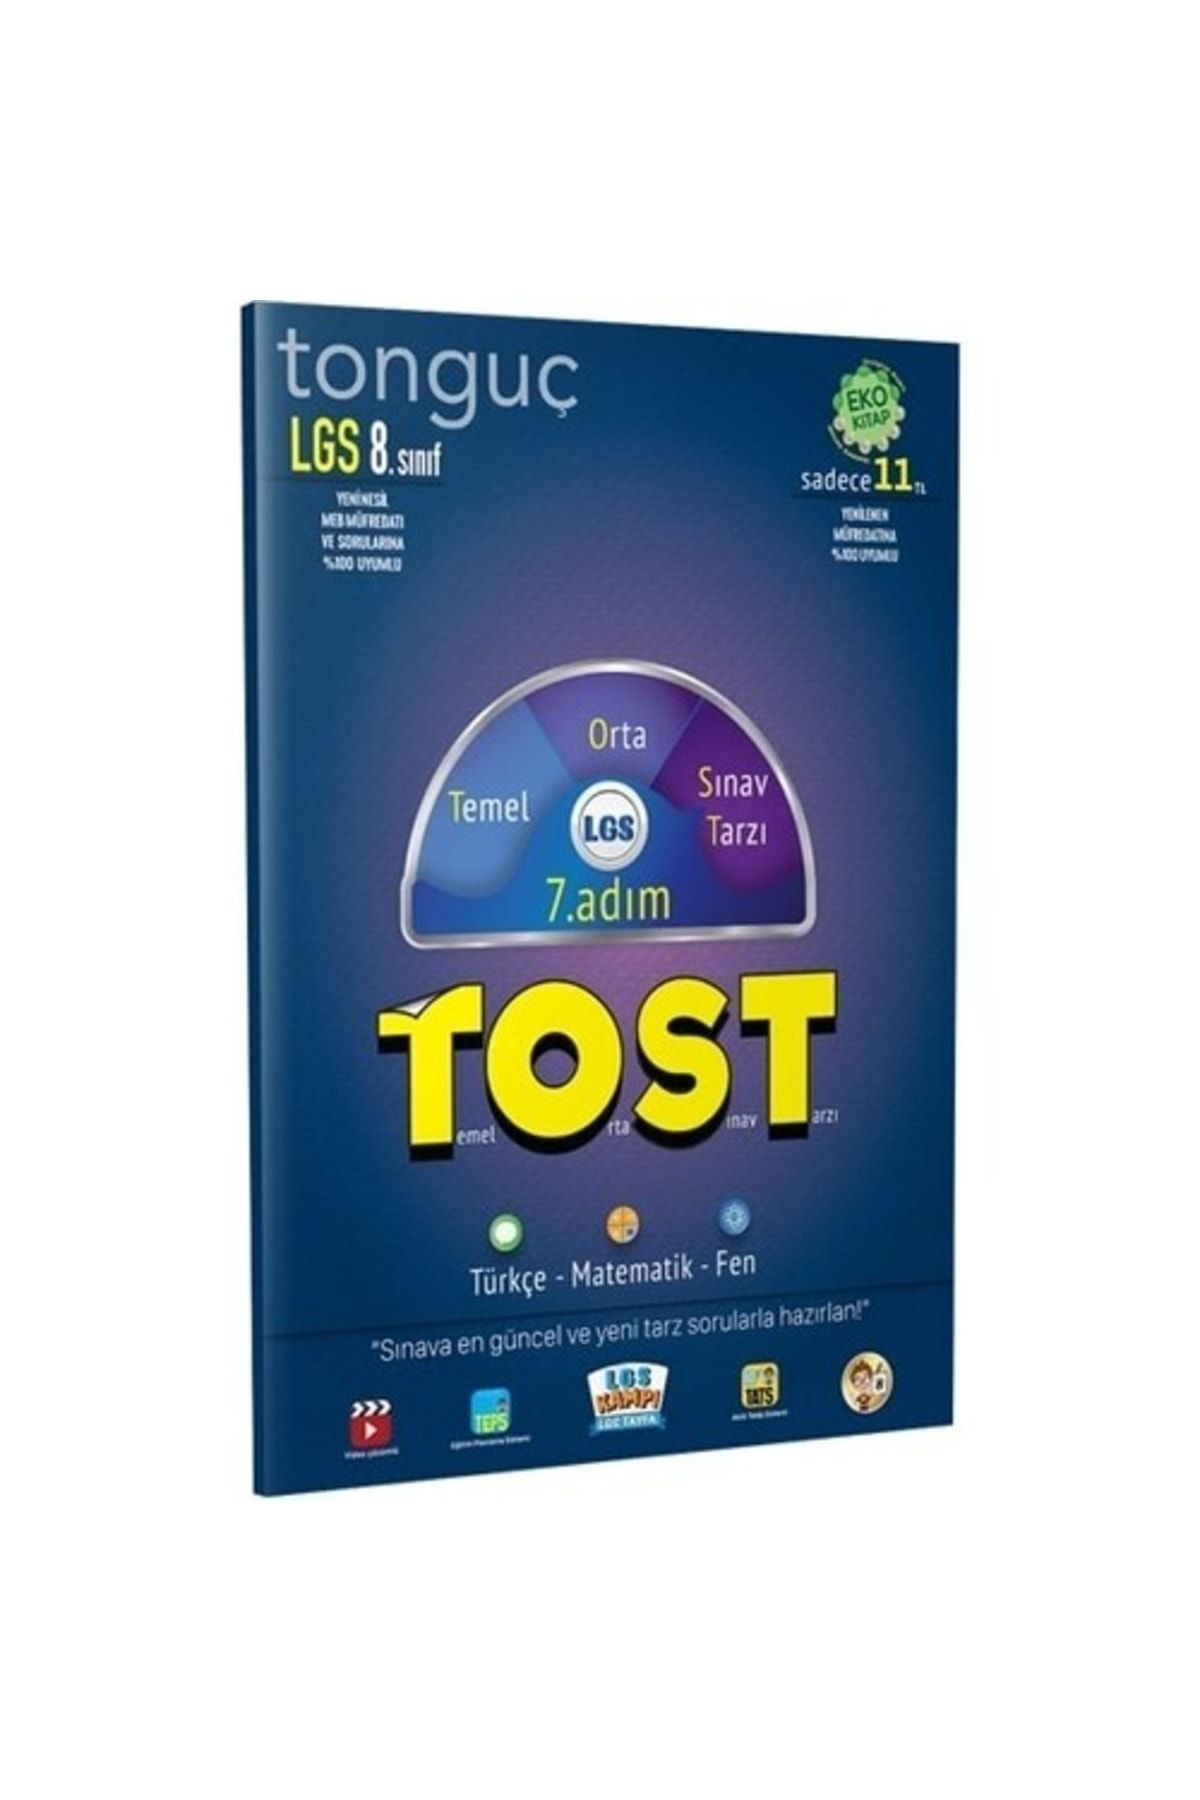 Tonguç Yayınları Tost 7 Adım Tonguç Yayınları - Kolektif